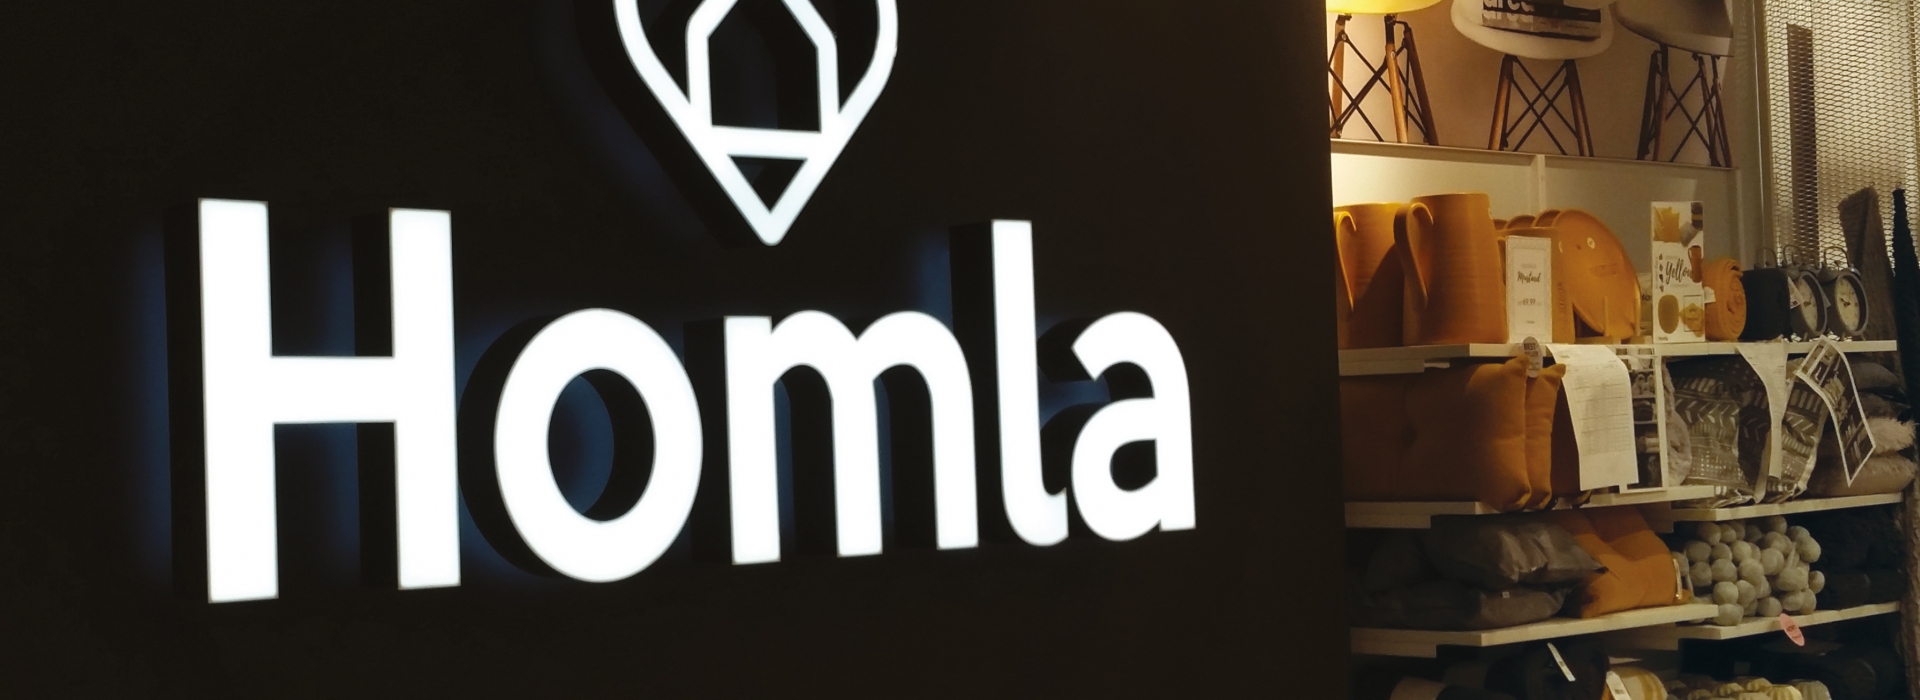 Homla - podświetlane logo przestrzenne